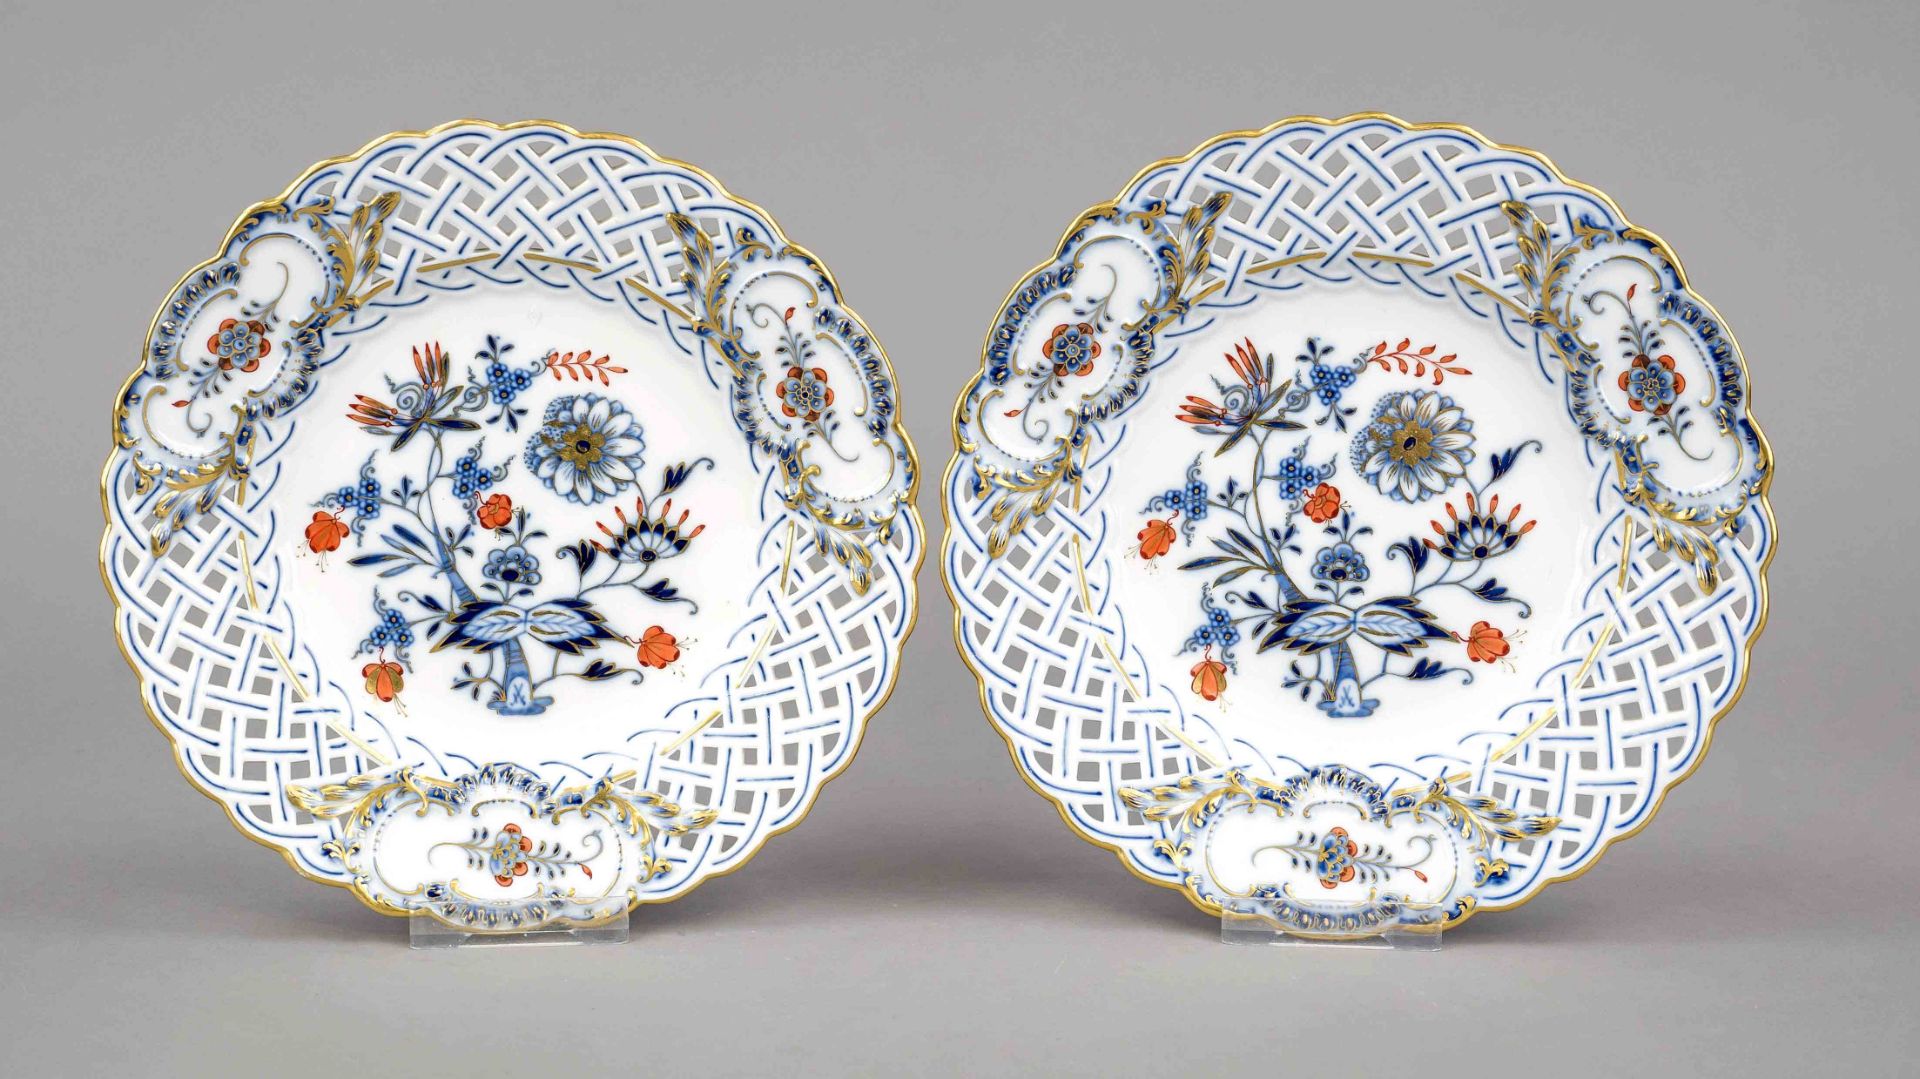 Two openwork plates, Meissen, Knauff Schwerter, mark 1850-1924, 1st choice, decor Onion pattern